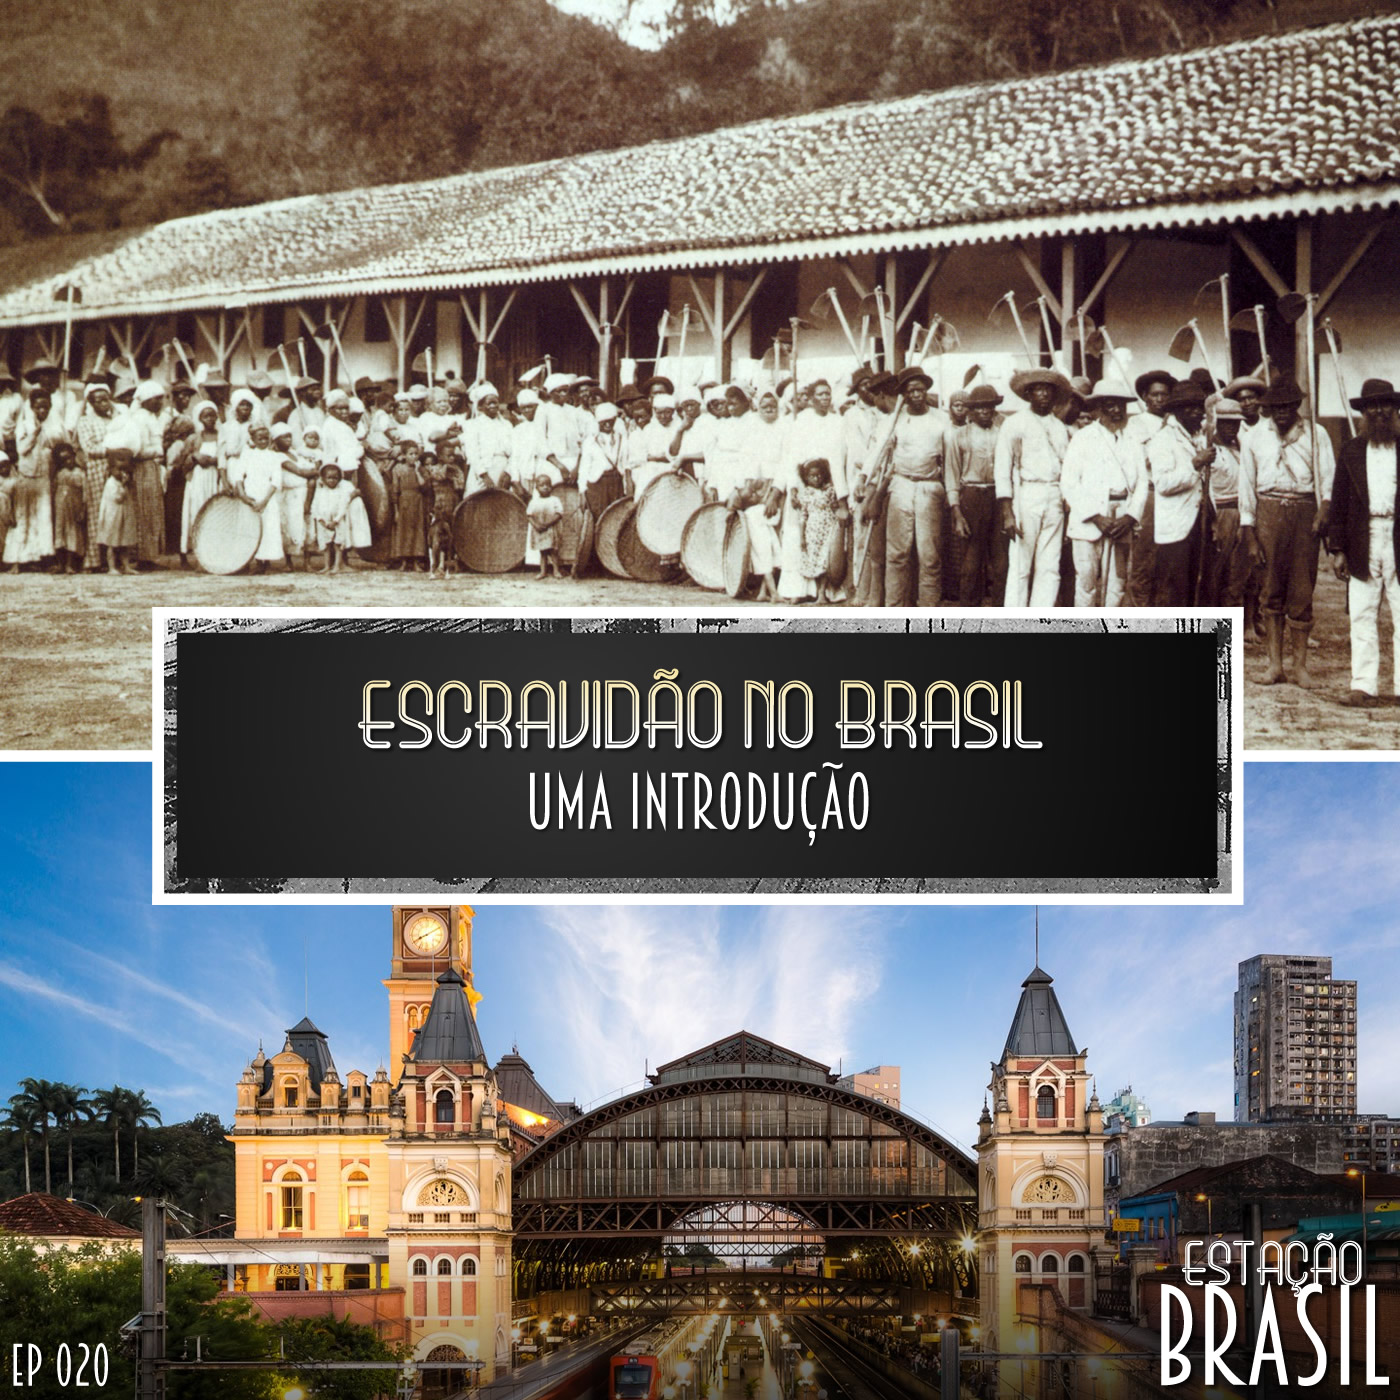 Escravidão no Brasil: uma introdução